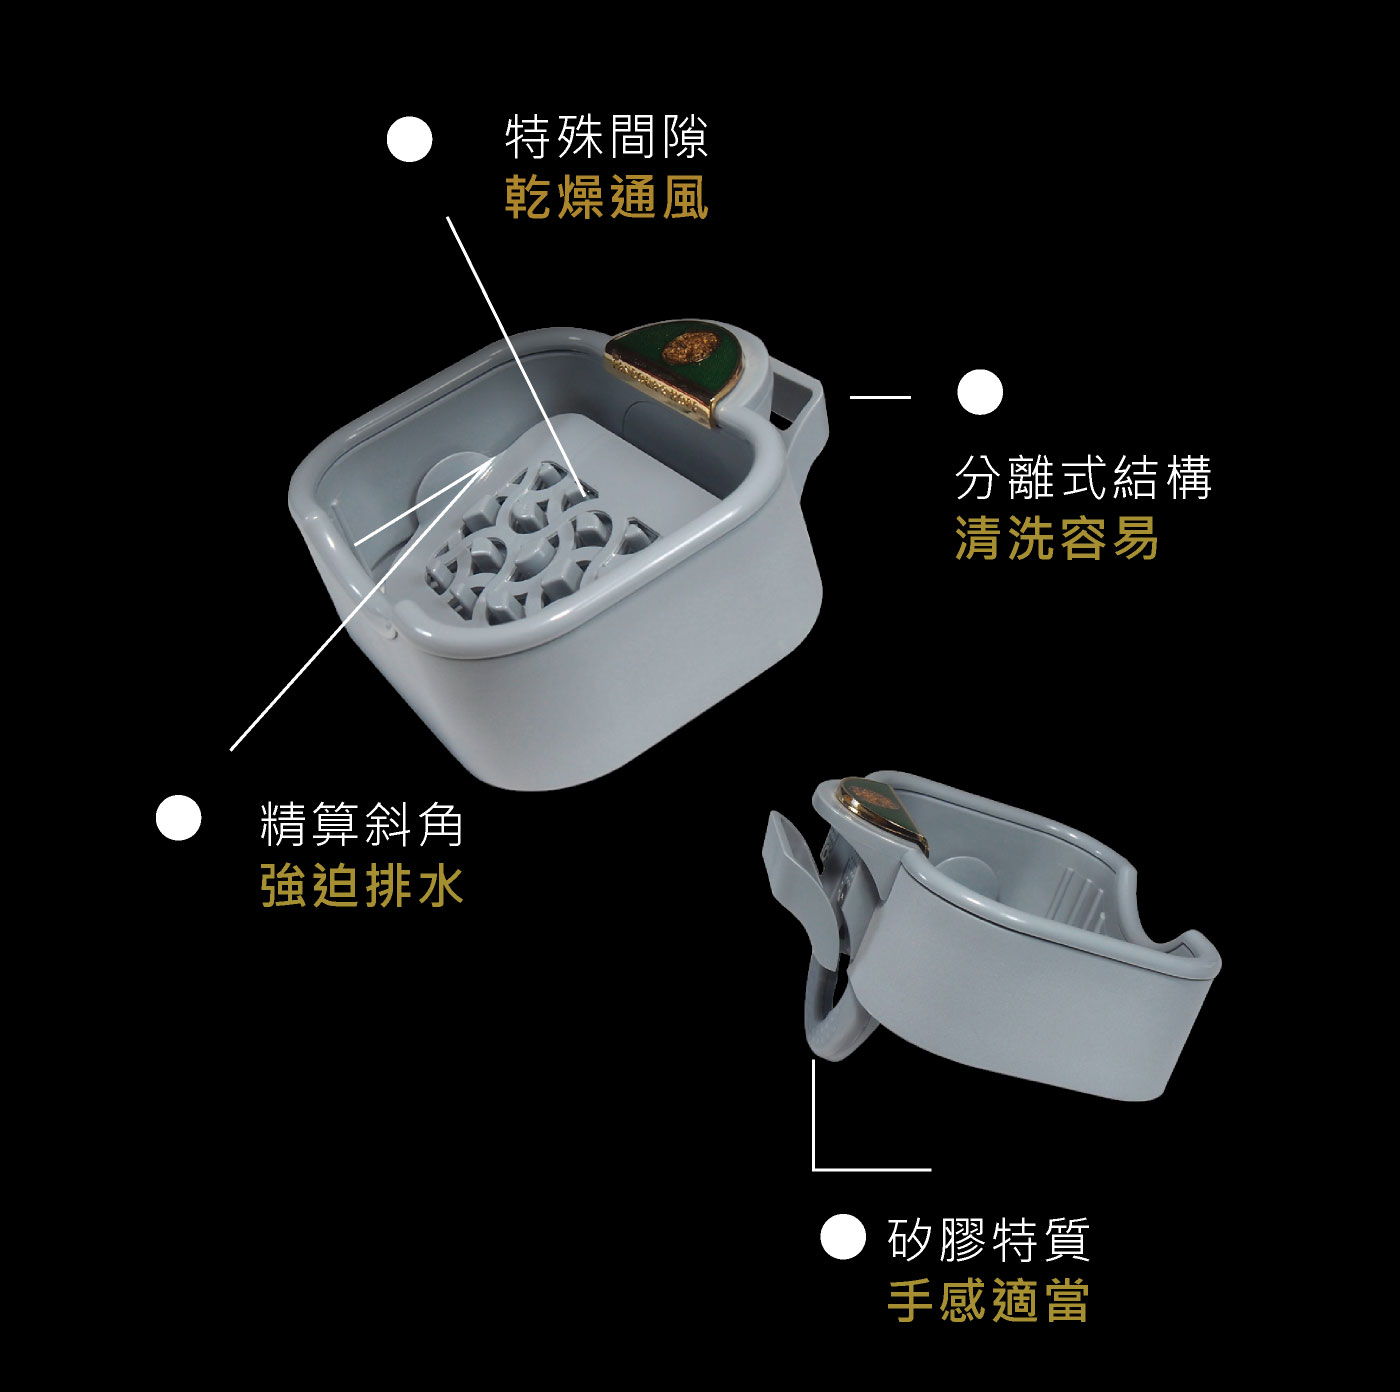 手工皂盒-特殊專利設計-通風-排水-清洗容易